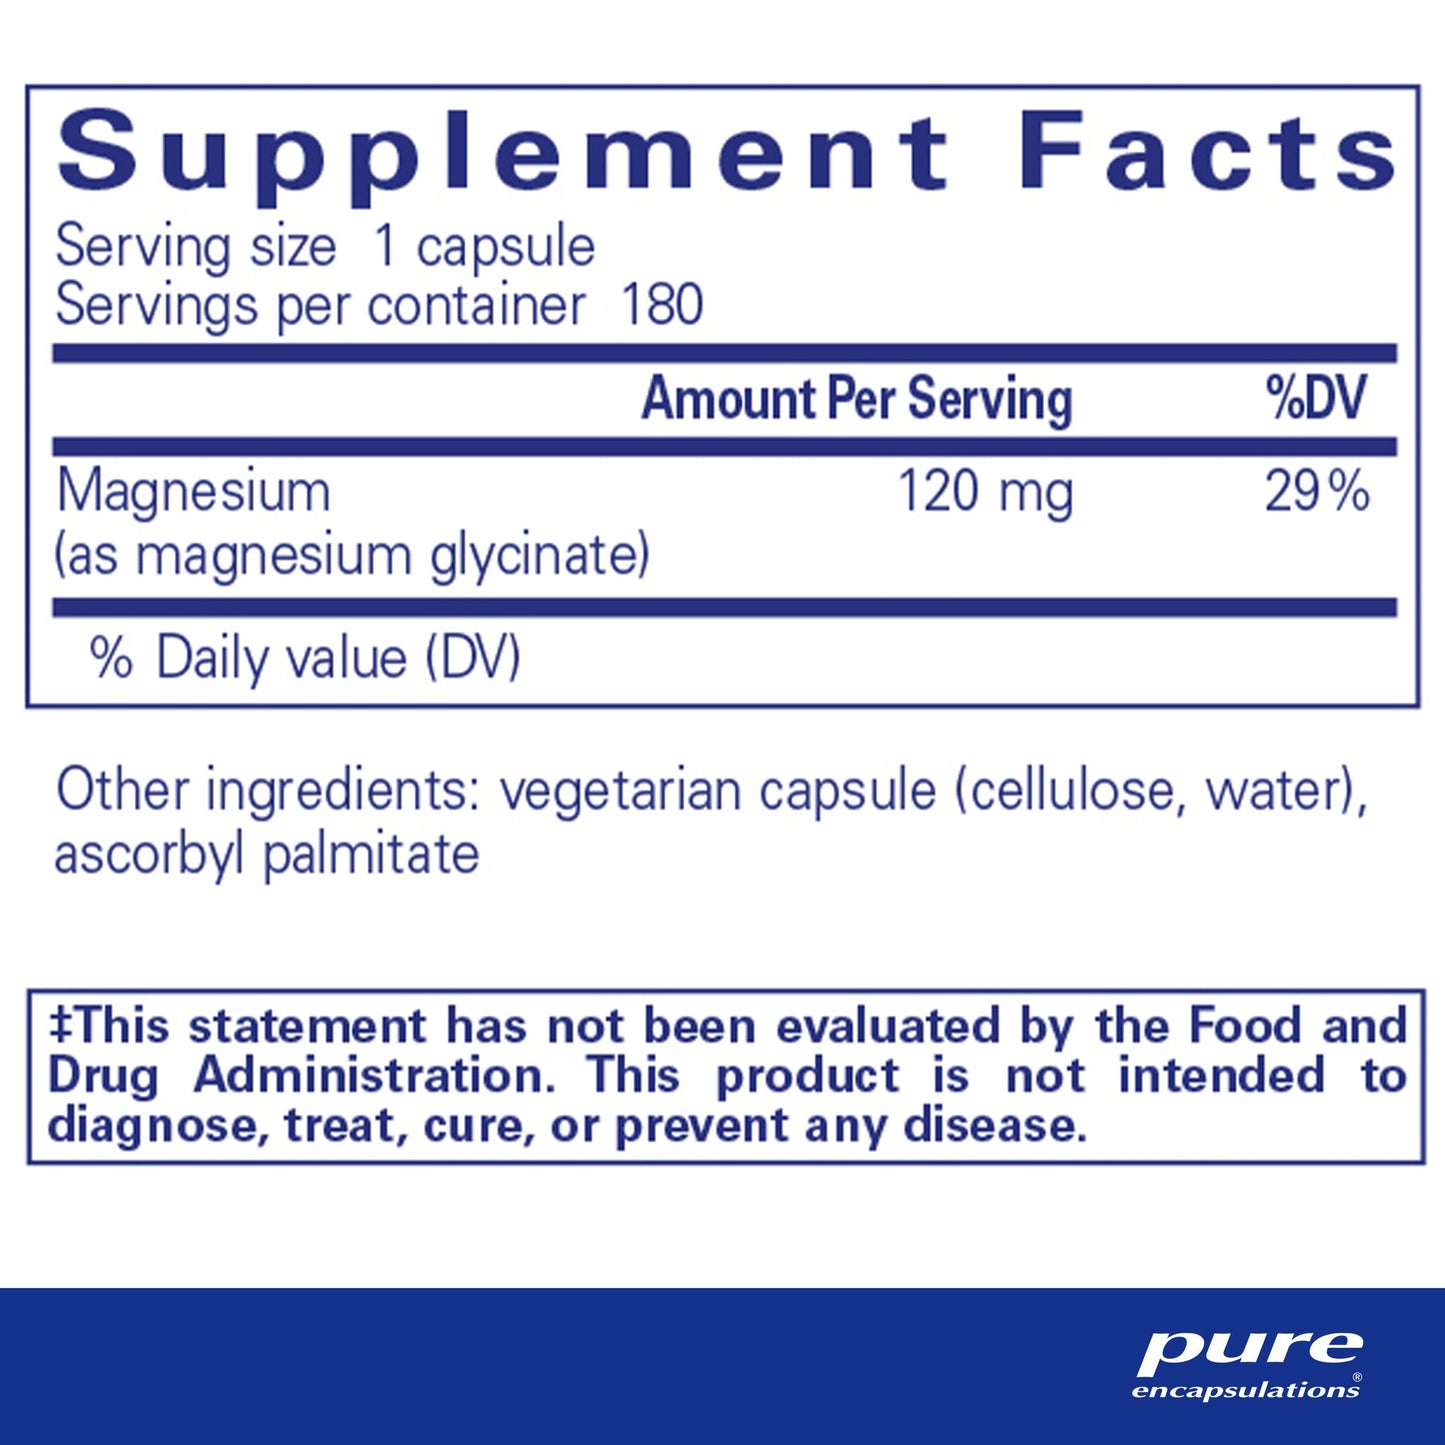 Magnesium (glycinate) - Pure Encapsulations